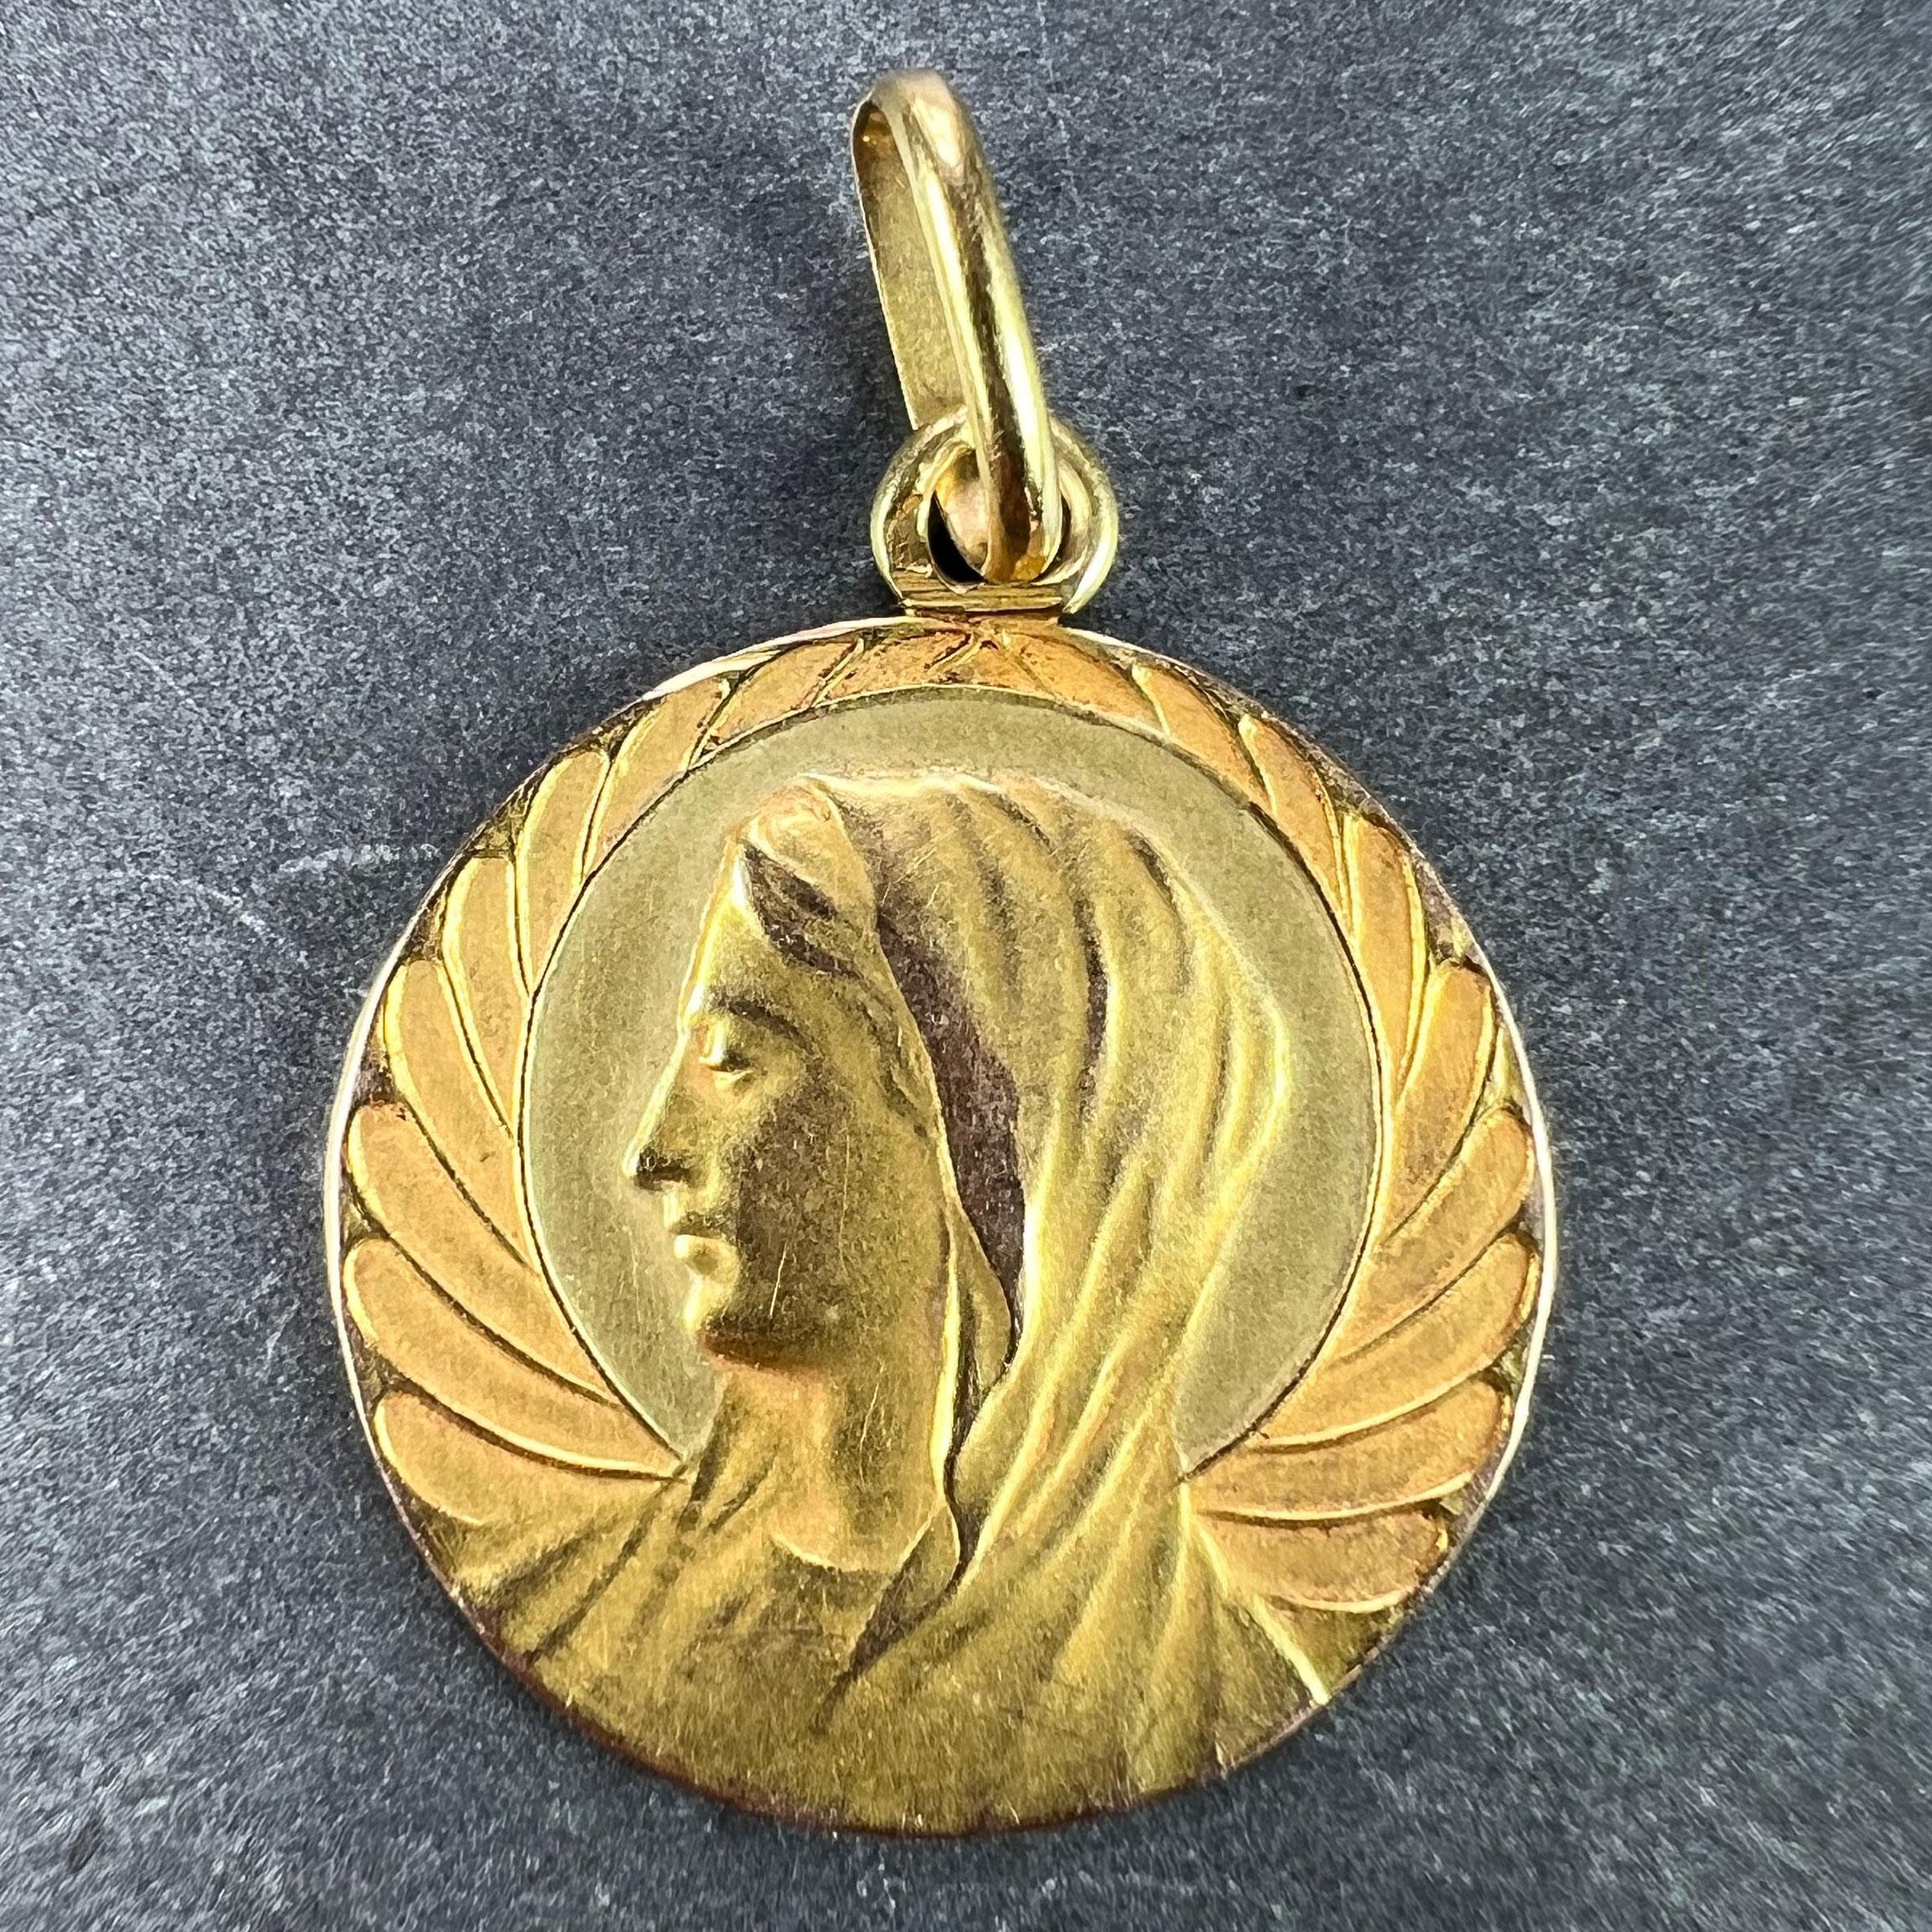 Pendentif à breloques religieuses en or jaune 18 carats (18K) conçu comme une médaille représentant la Vierge Marie avec une auréole sur un fond festonné ressemblant à des ailes d'ange. Estampillé de la marque de la tête d'aigle pour l'or 18 carats